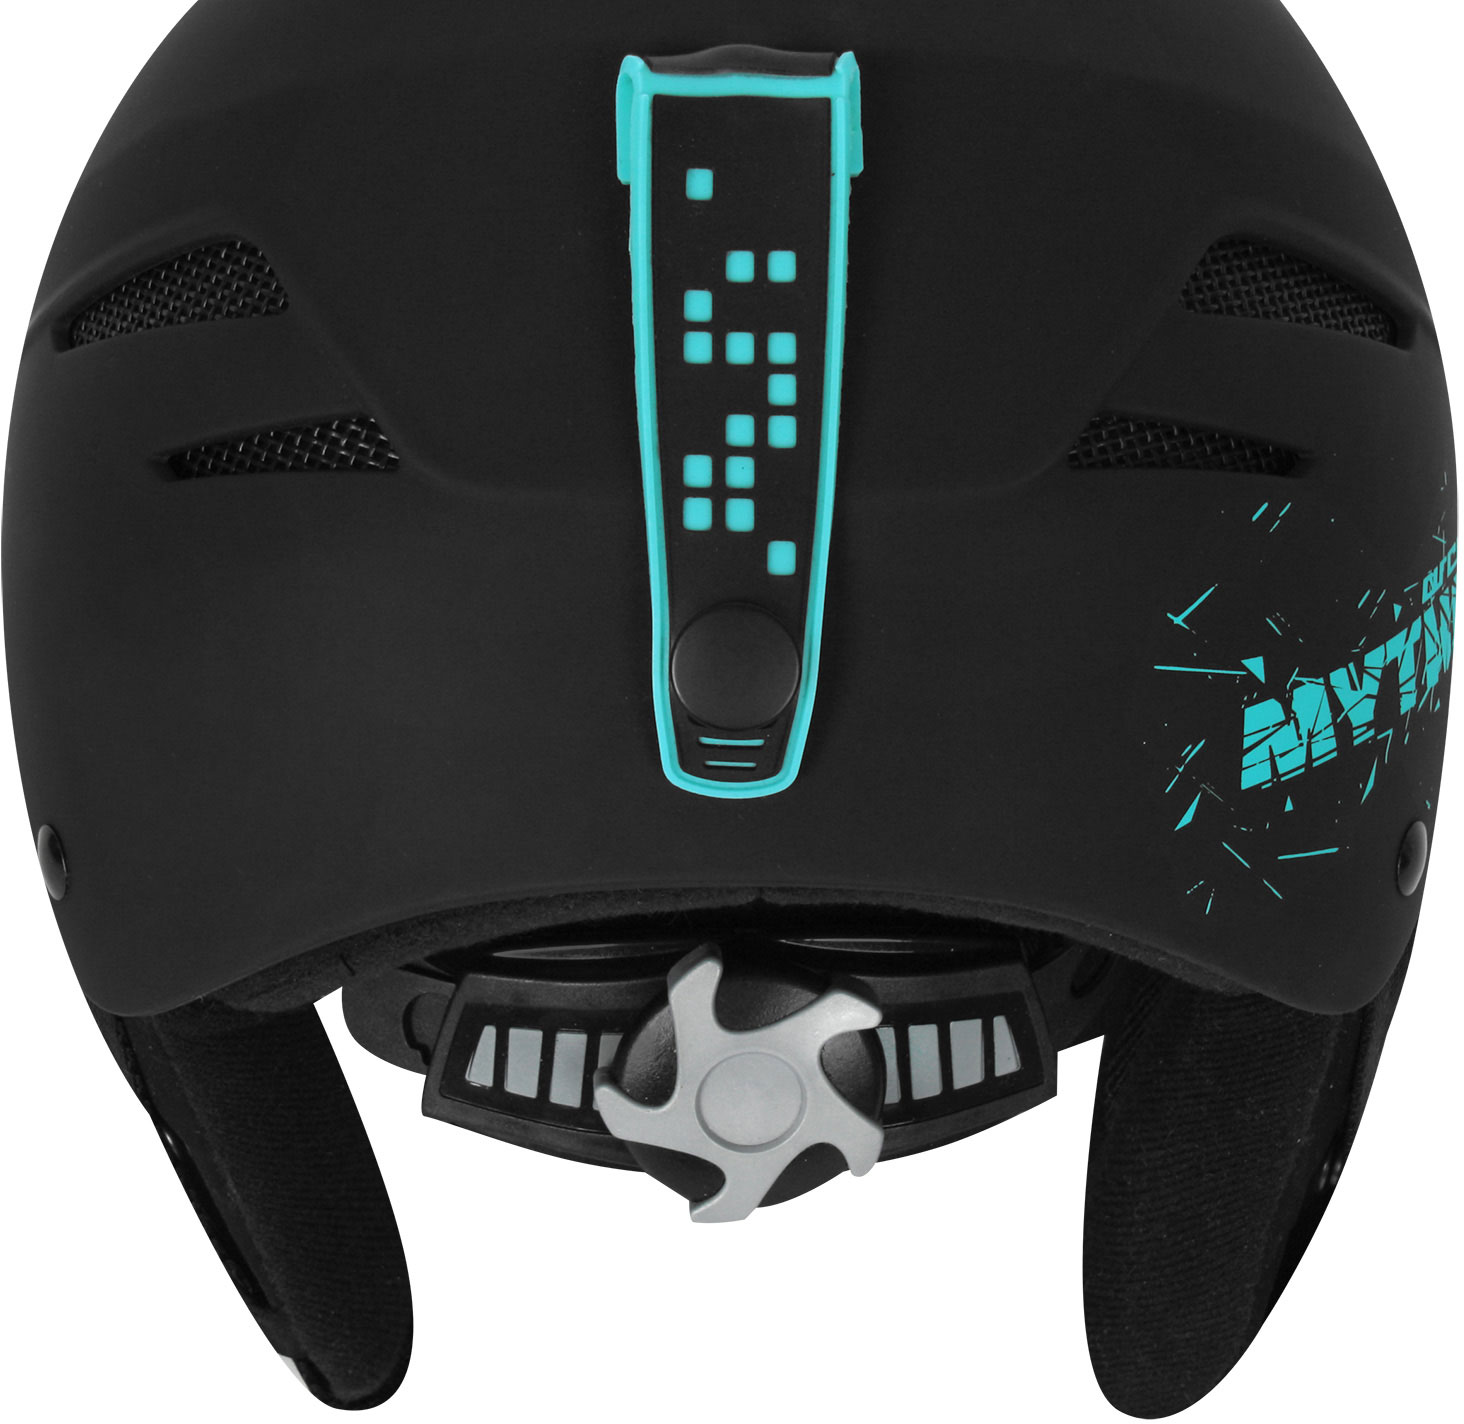 Snowboard helmet